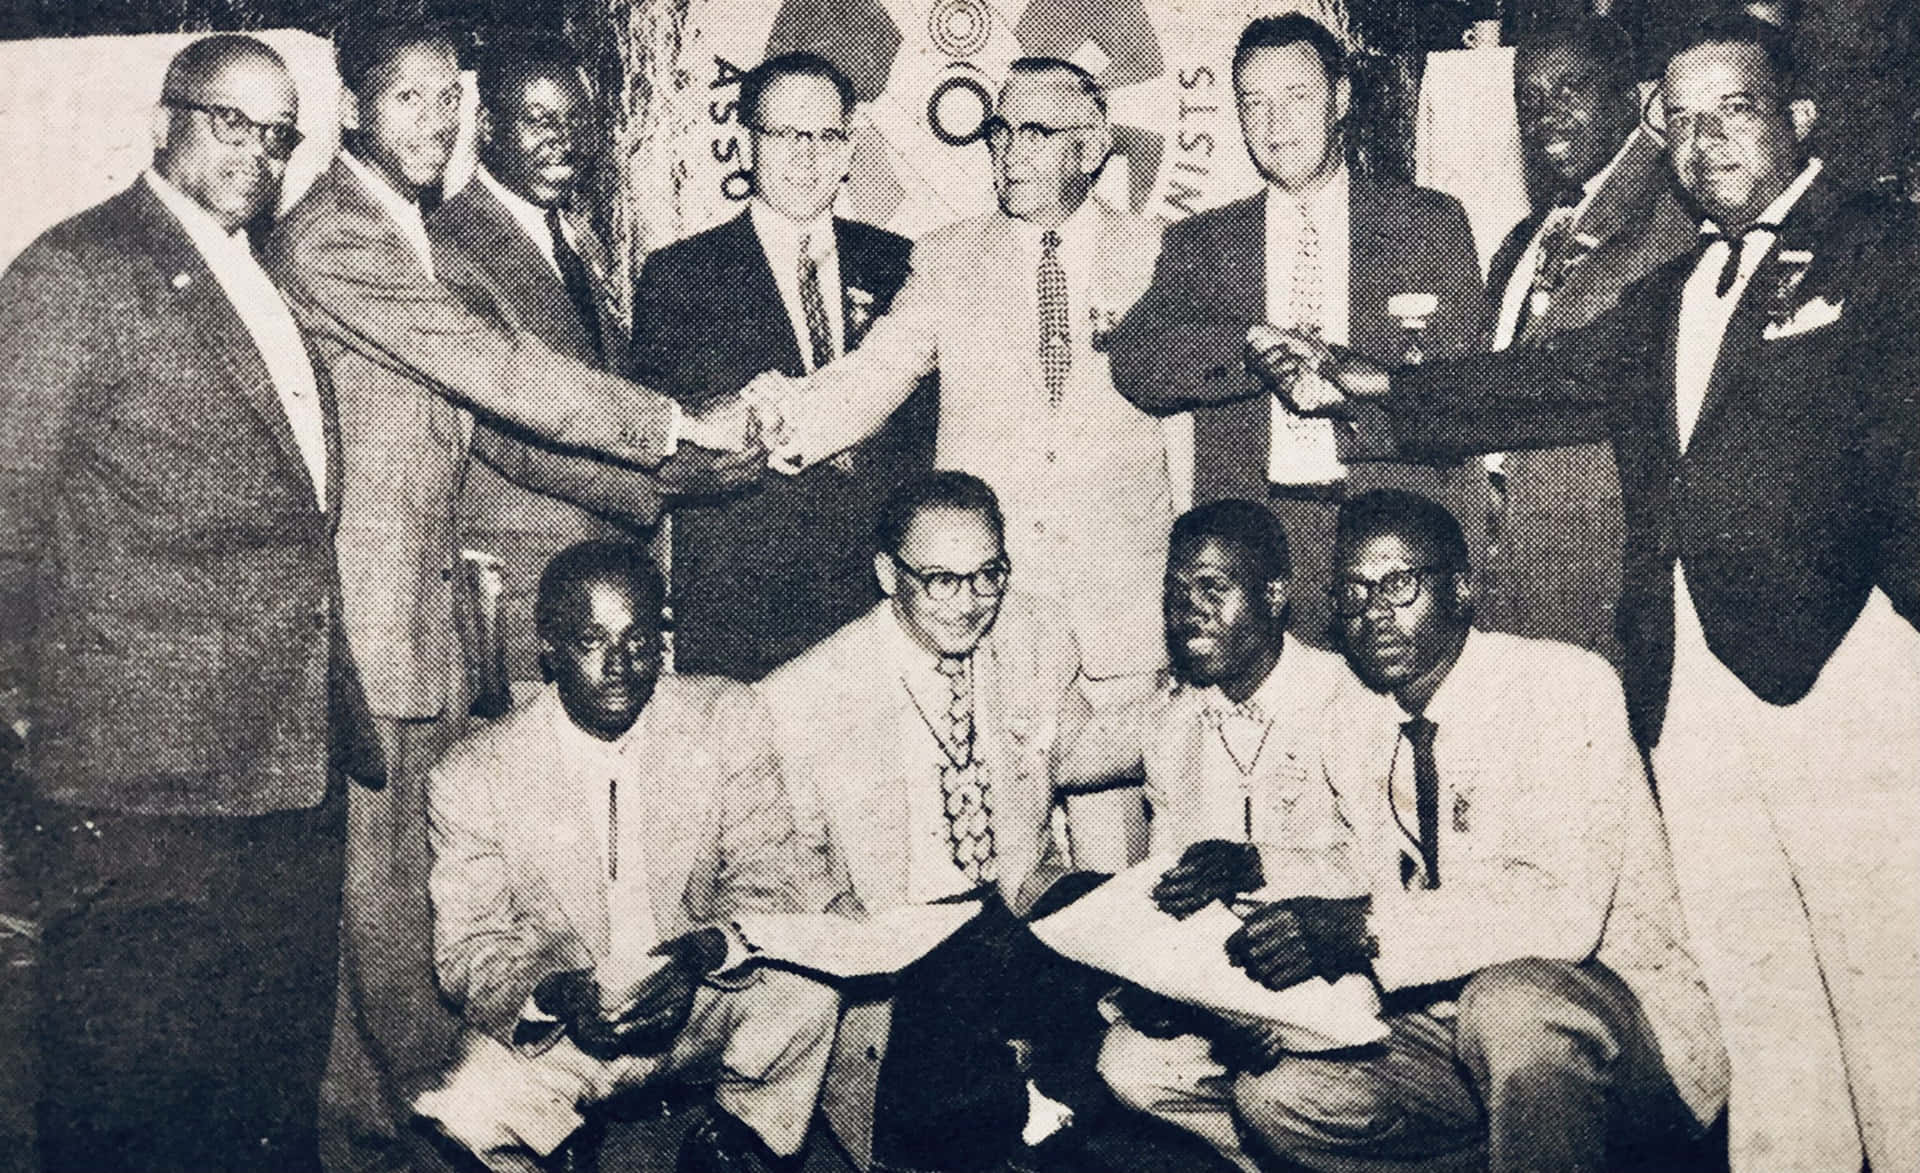 En gruppe mænd i jakkesæt og slips står sammen